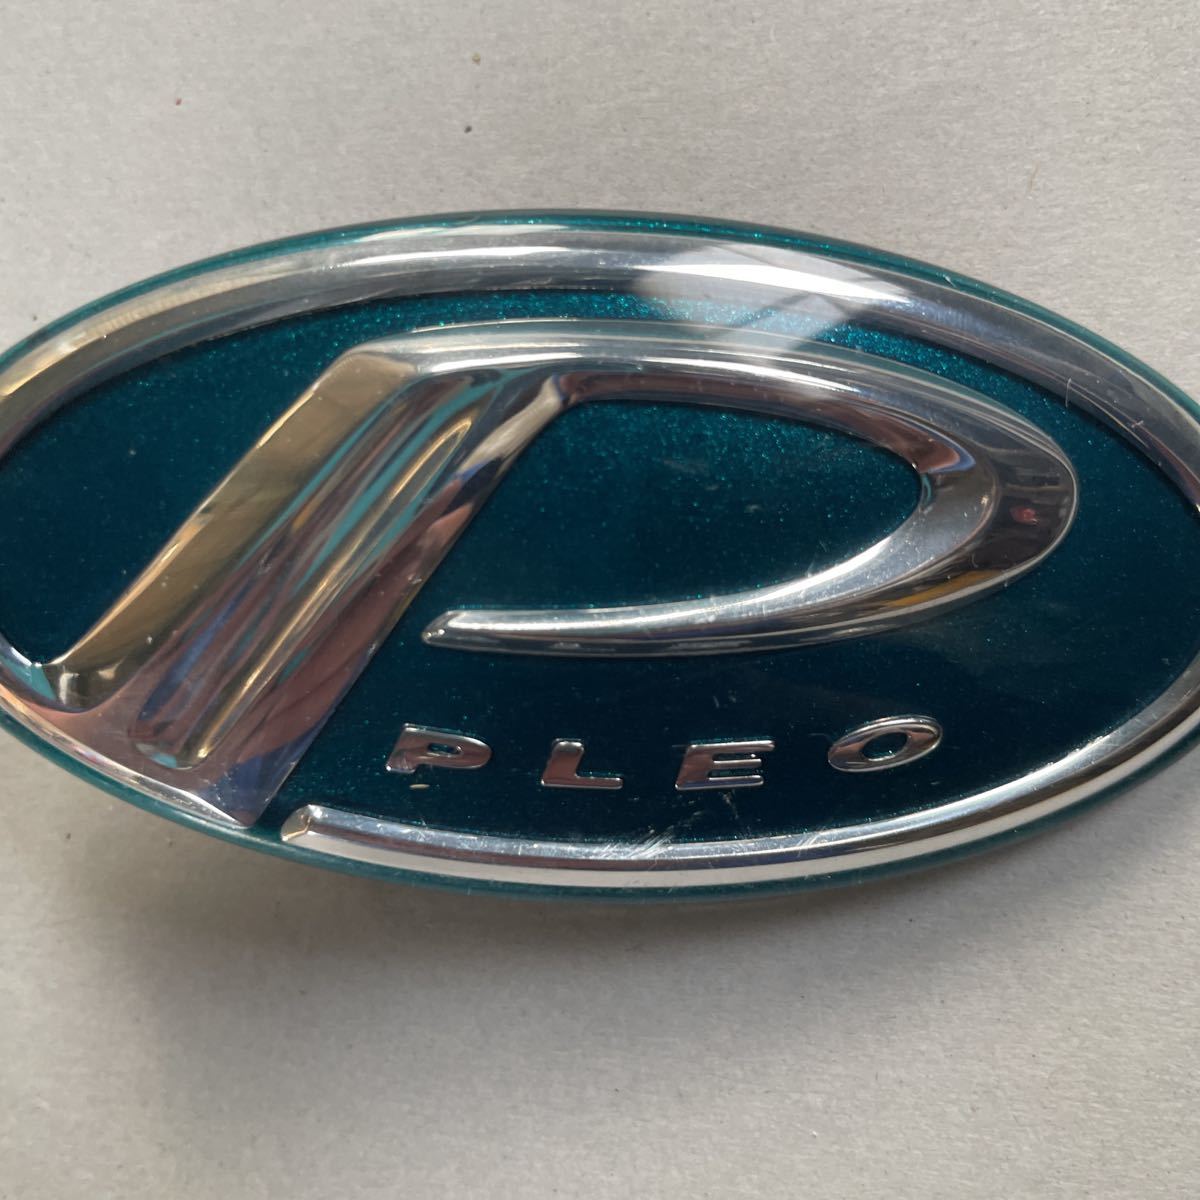  Subaru Pleo front emblem 